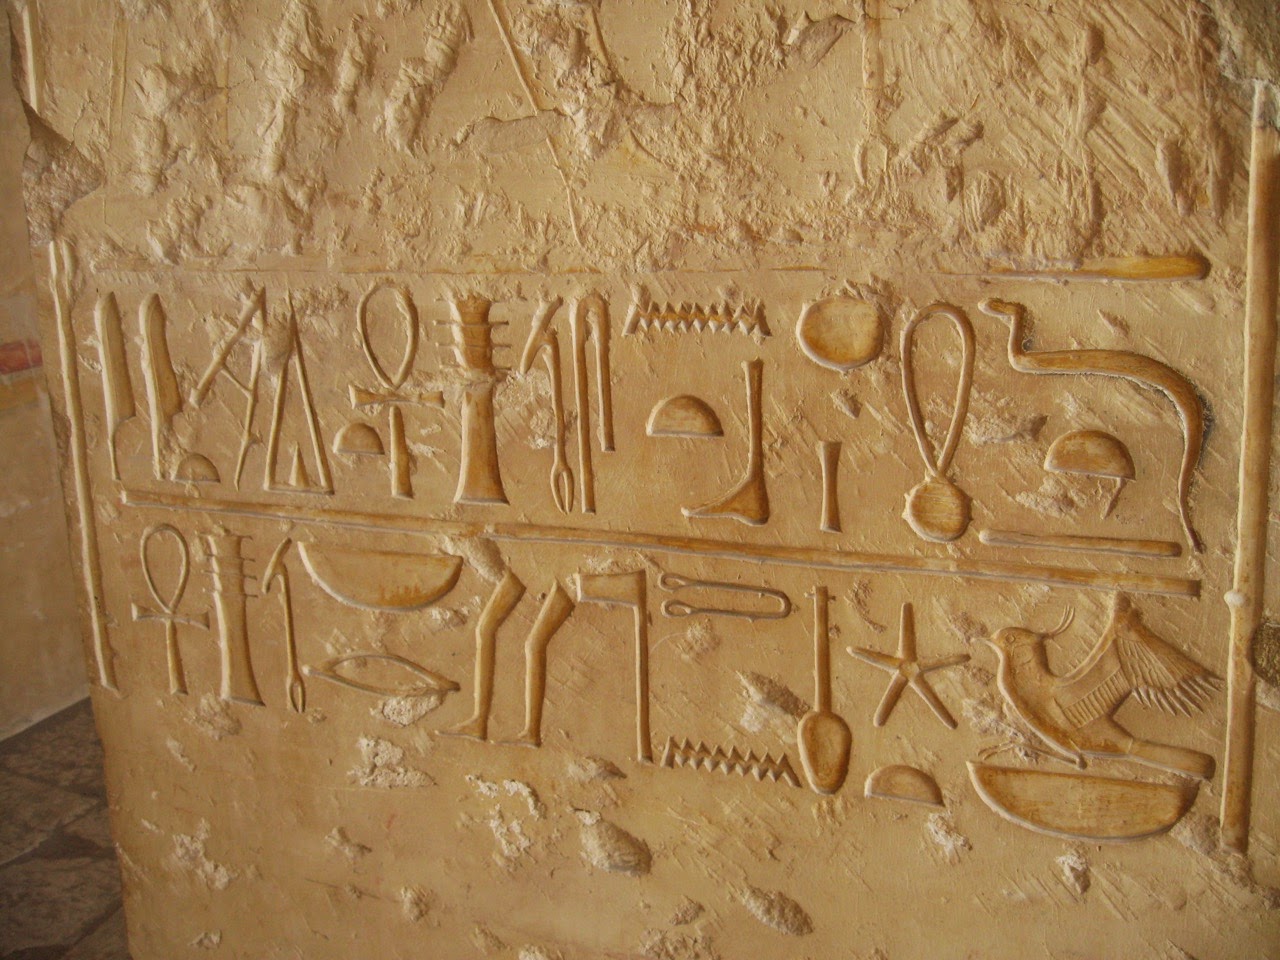 Включи древности. Письменность древнего Египта петроглифы. Древний Египет наскальные письмена. Наскальная письменность Египта. Иероглифические знаки на камнях древний Египет.